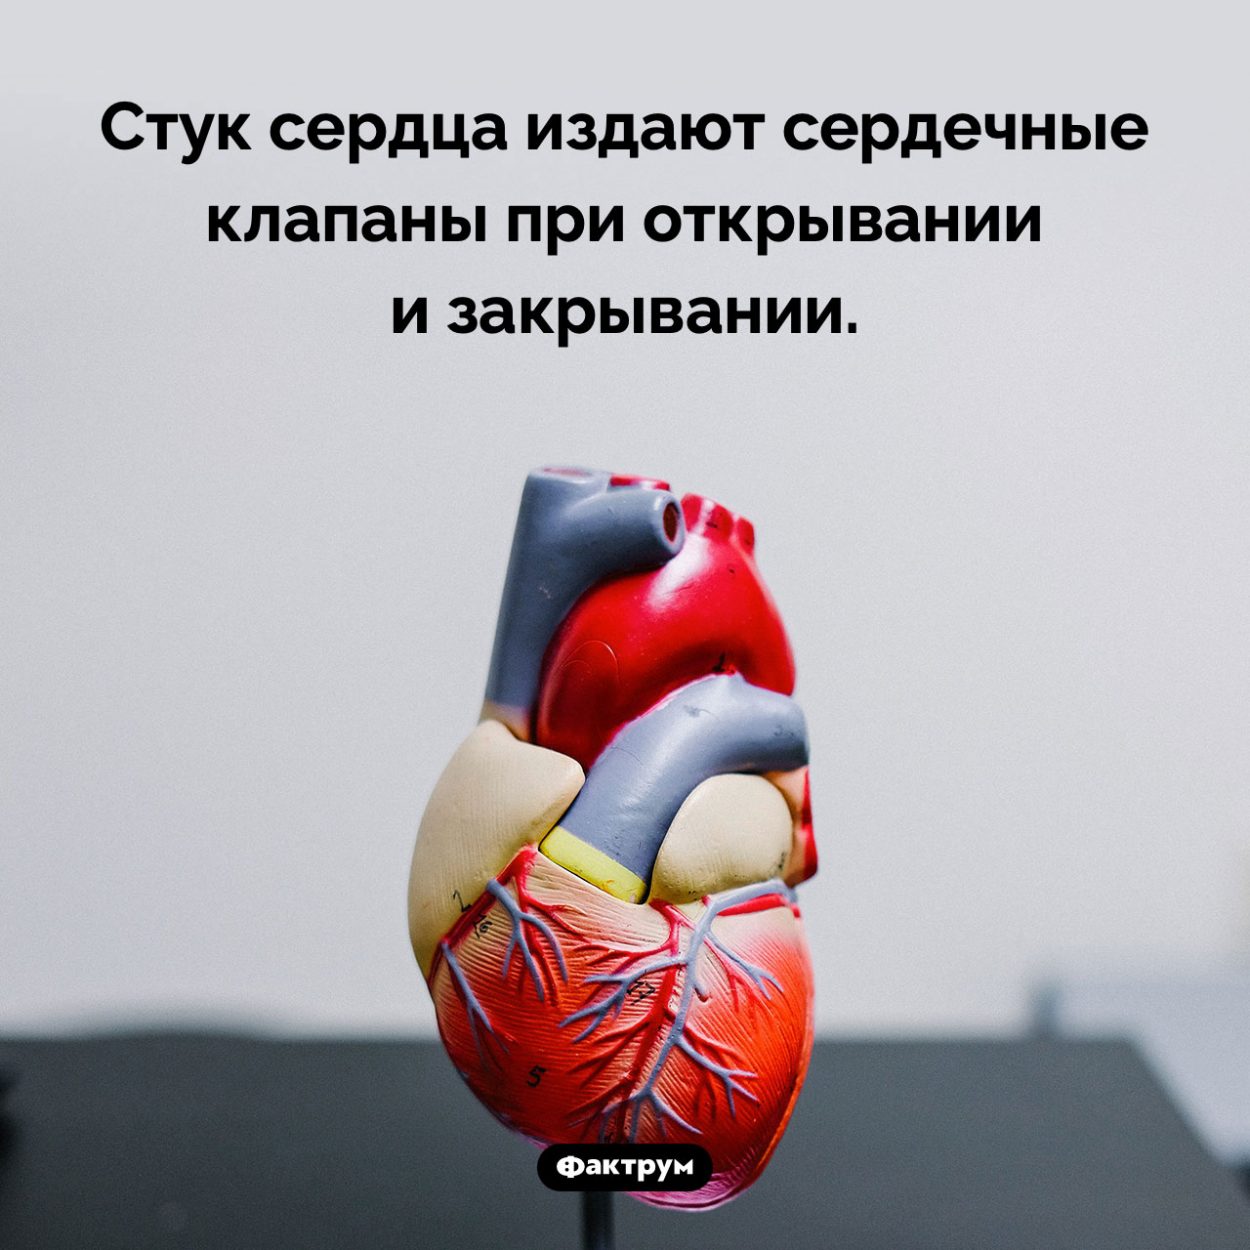 Почему сердце стучит. Стук сердца издают сердечные клапаны при открывании и закрывании.